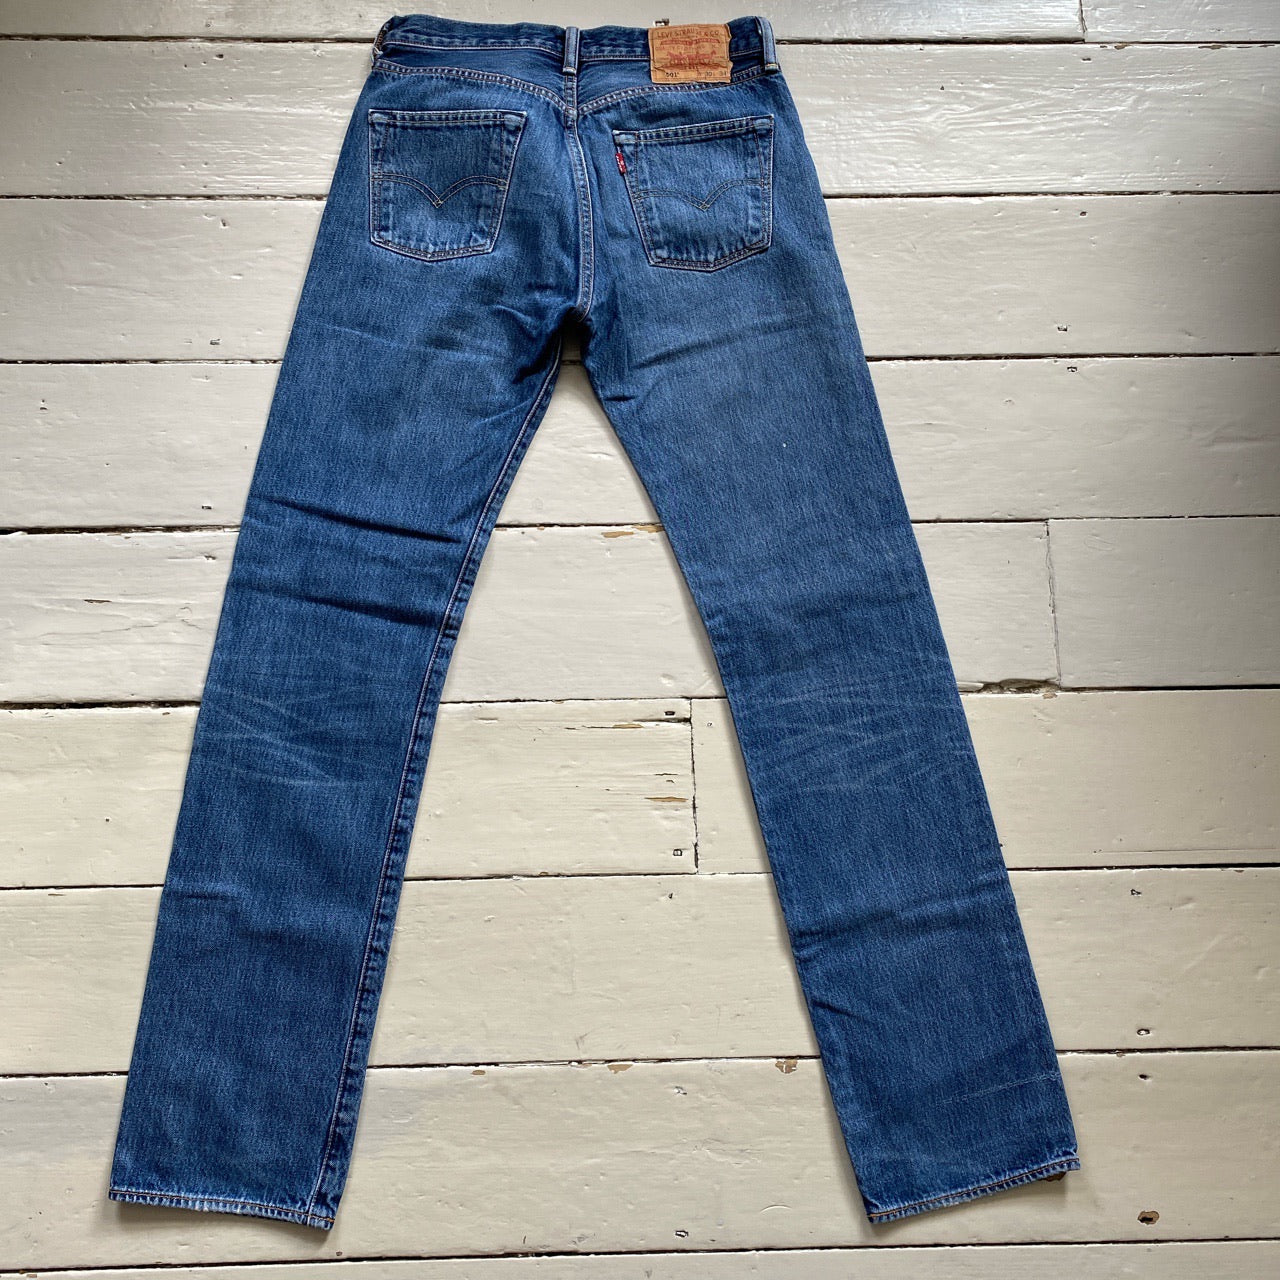 Levis 501 Light Jeans (30/34)